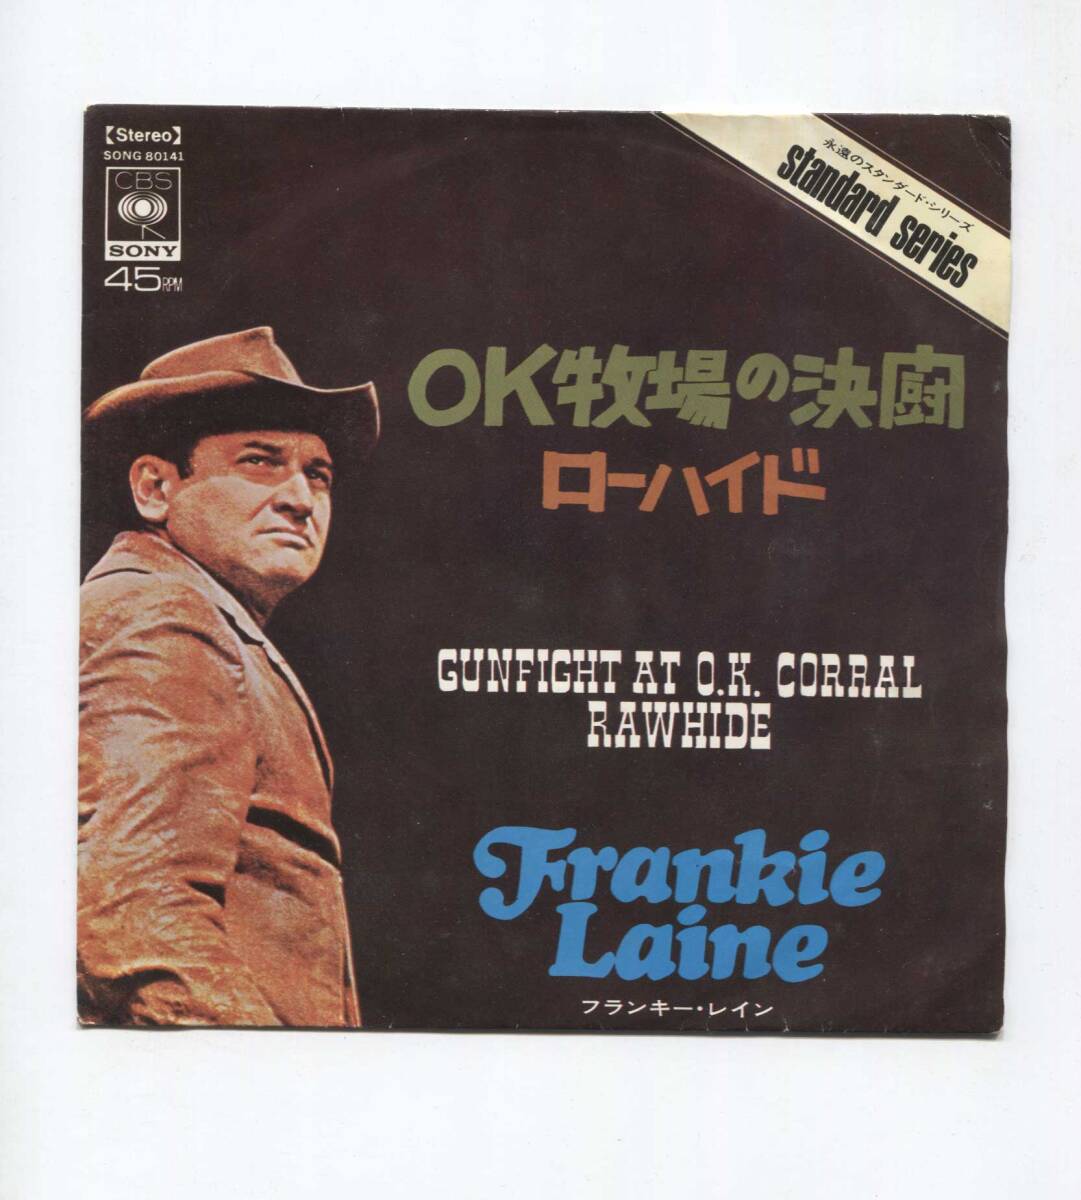 [EP запись одиночный включение в покупку приветствуется ] FRANKIE LAINE Franky * дождь # OK ранчо. решение .GUNFIGHT AT O.K. CORAL # RAWHIDE low hyde 